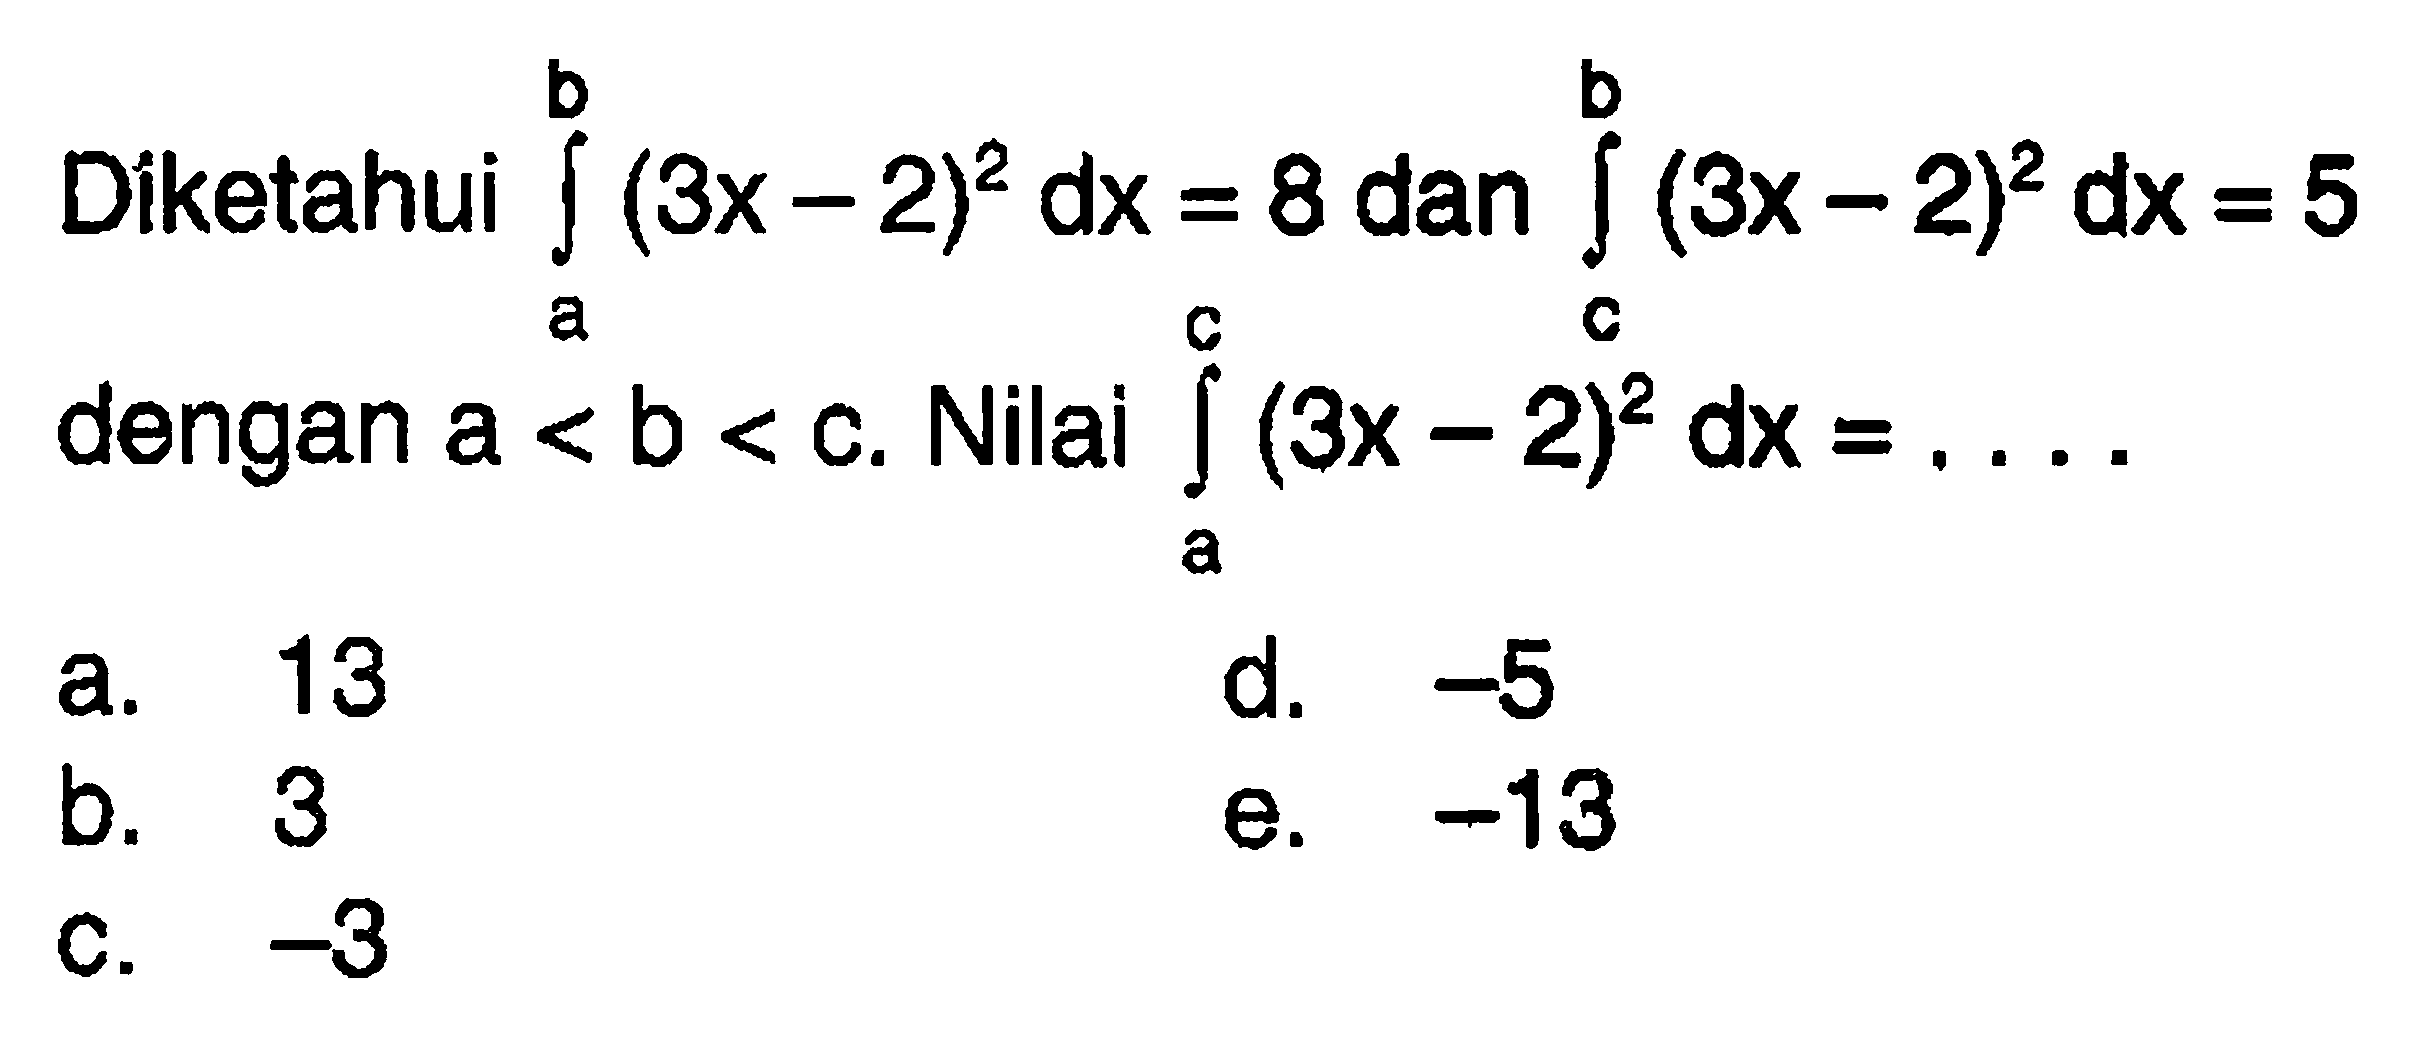 Díketahui  integral a b (3x-2)^2 dx=8  dan  integral c b (3x-2)^2 dx=5  dengan  a<b<c .  Nilai  integral a c (3x-2)^2 dx=.... 
